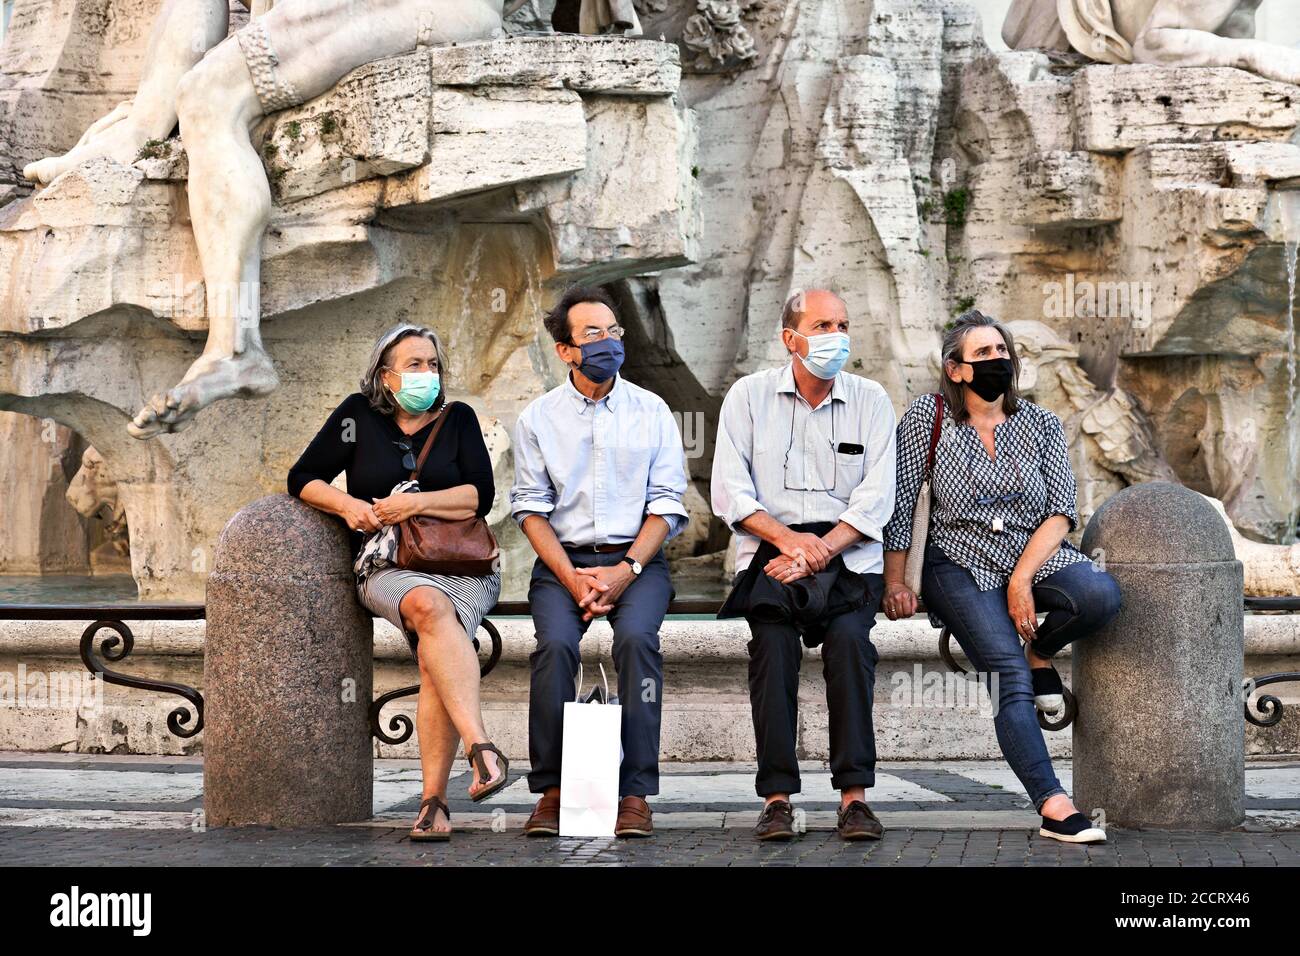 Les touristes portant des masques Covid 19, assis à la fontaine des quatre fleuves de la place Navona, admirent la beauté des arts environnants Rome, Italie, Europe Banque D'Images